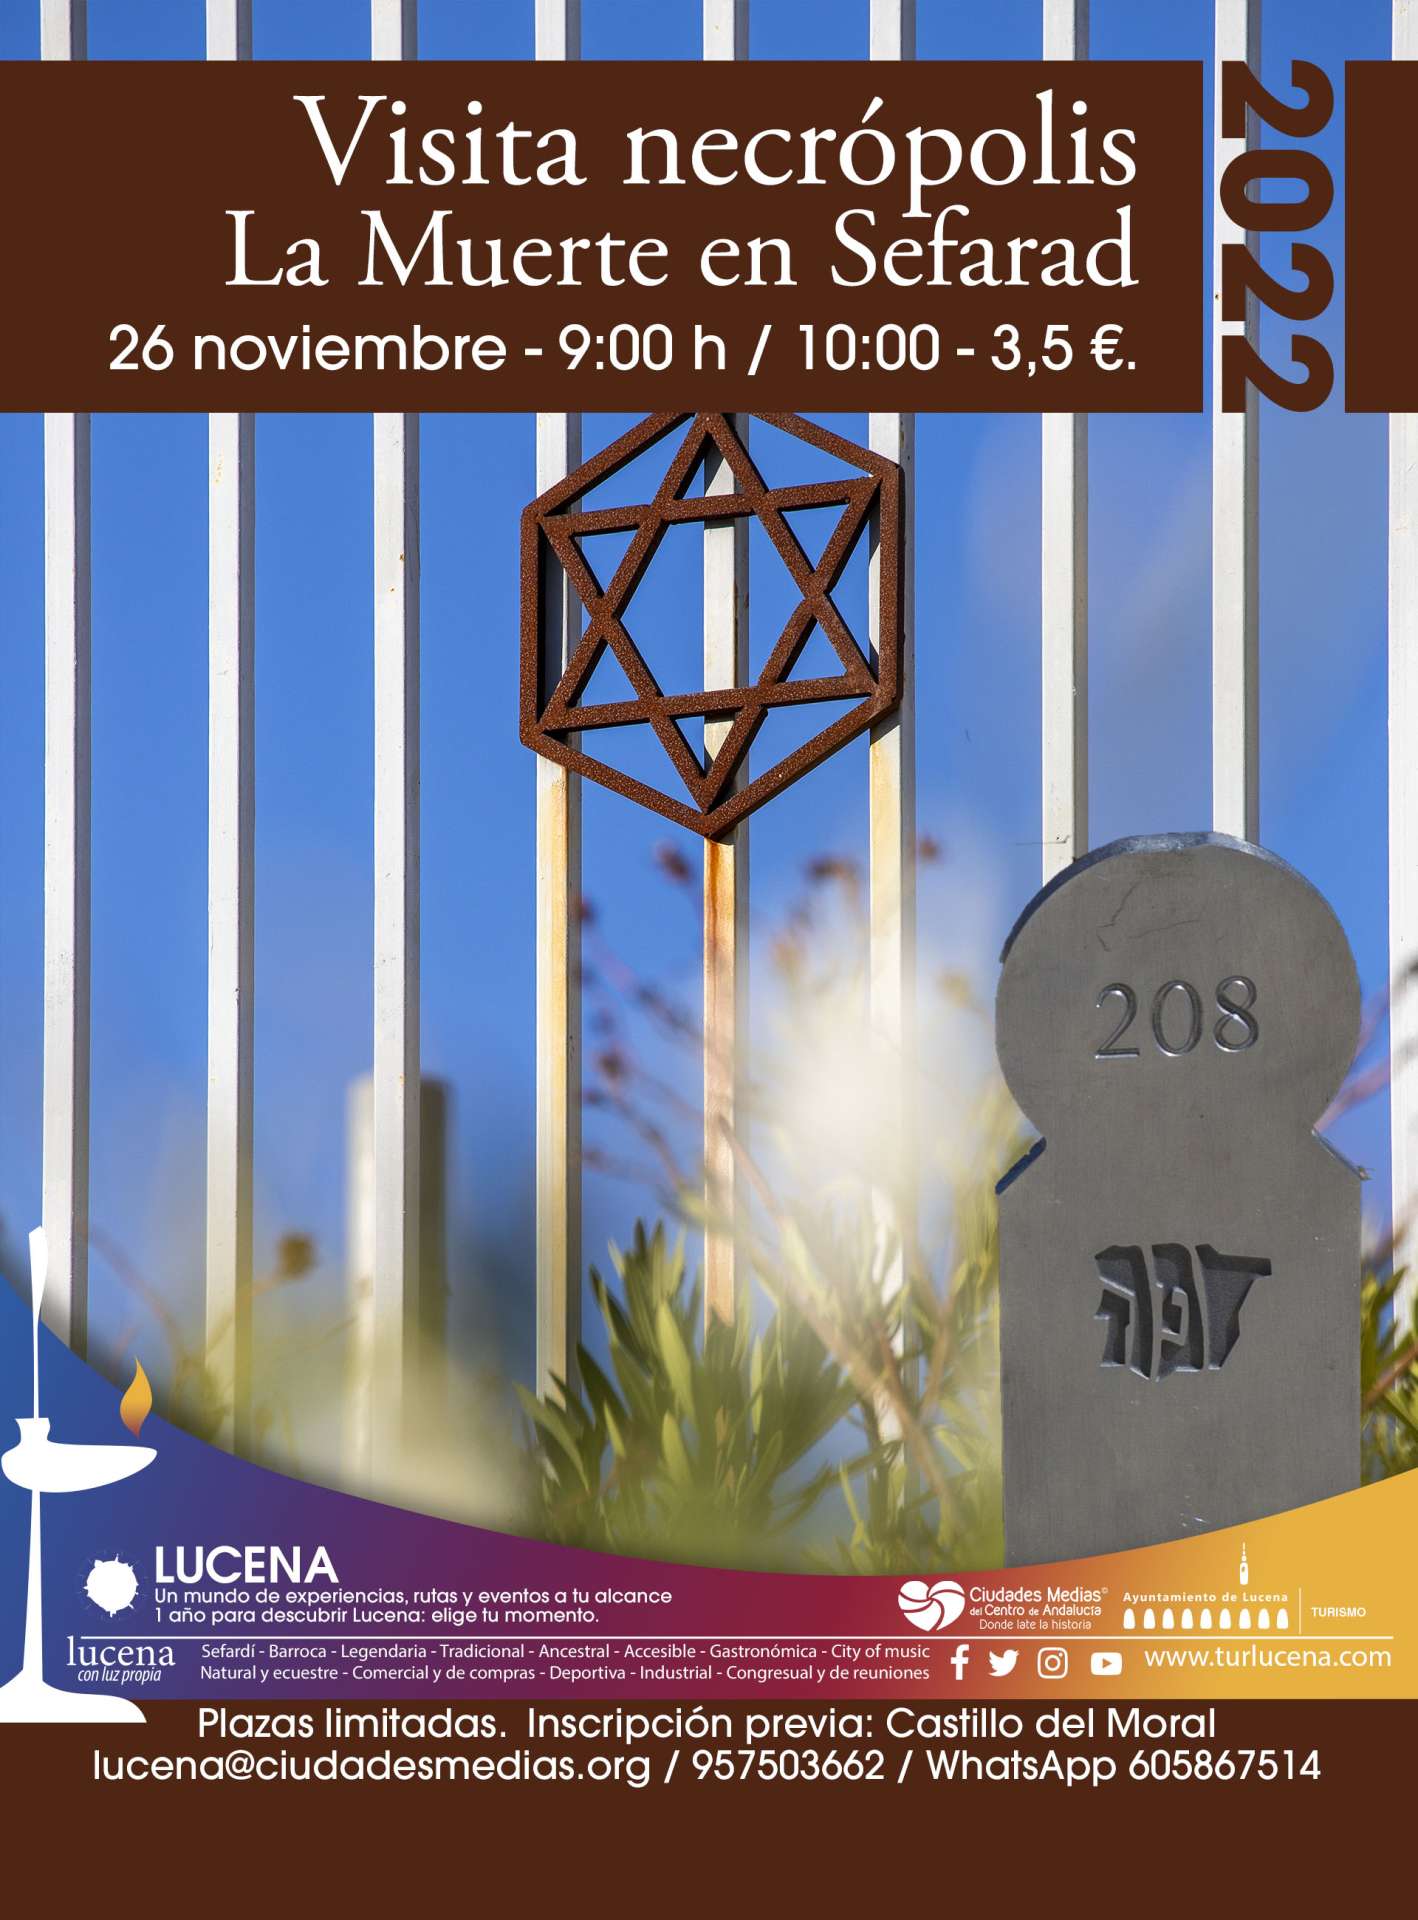 Visita a la Necrópolis judía de Lucena / La Muerte ne Sefarad